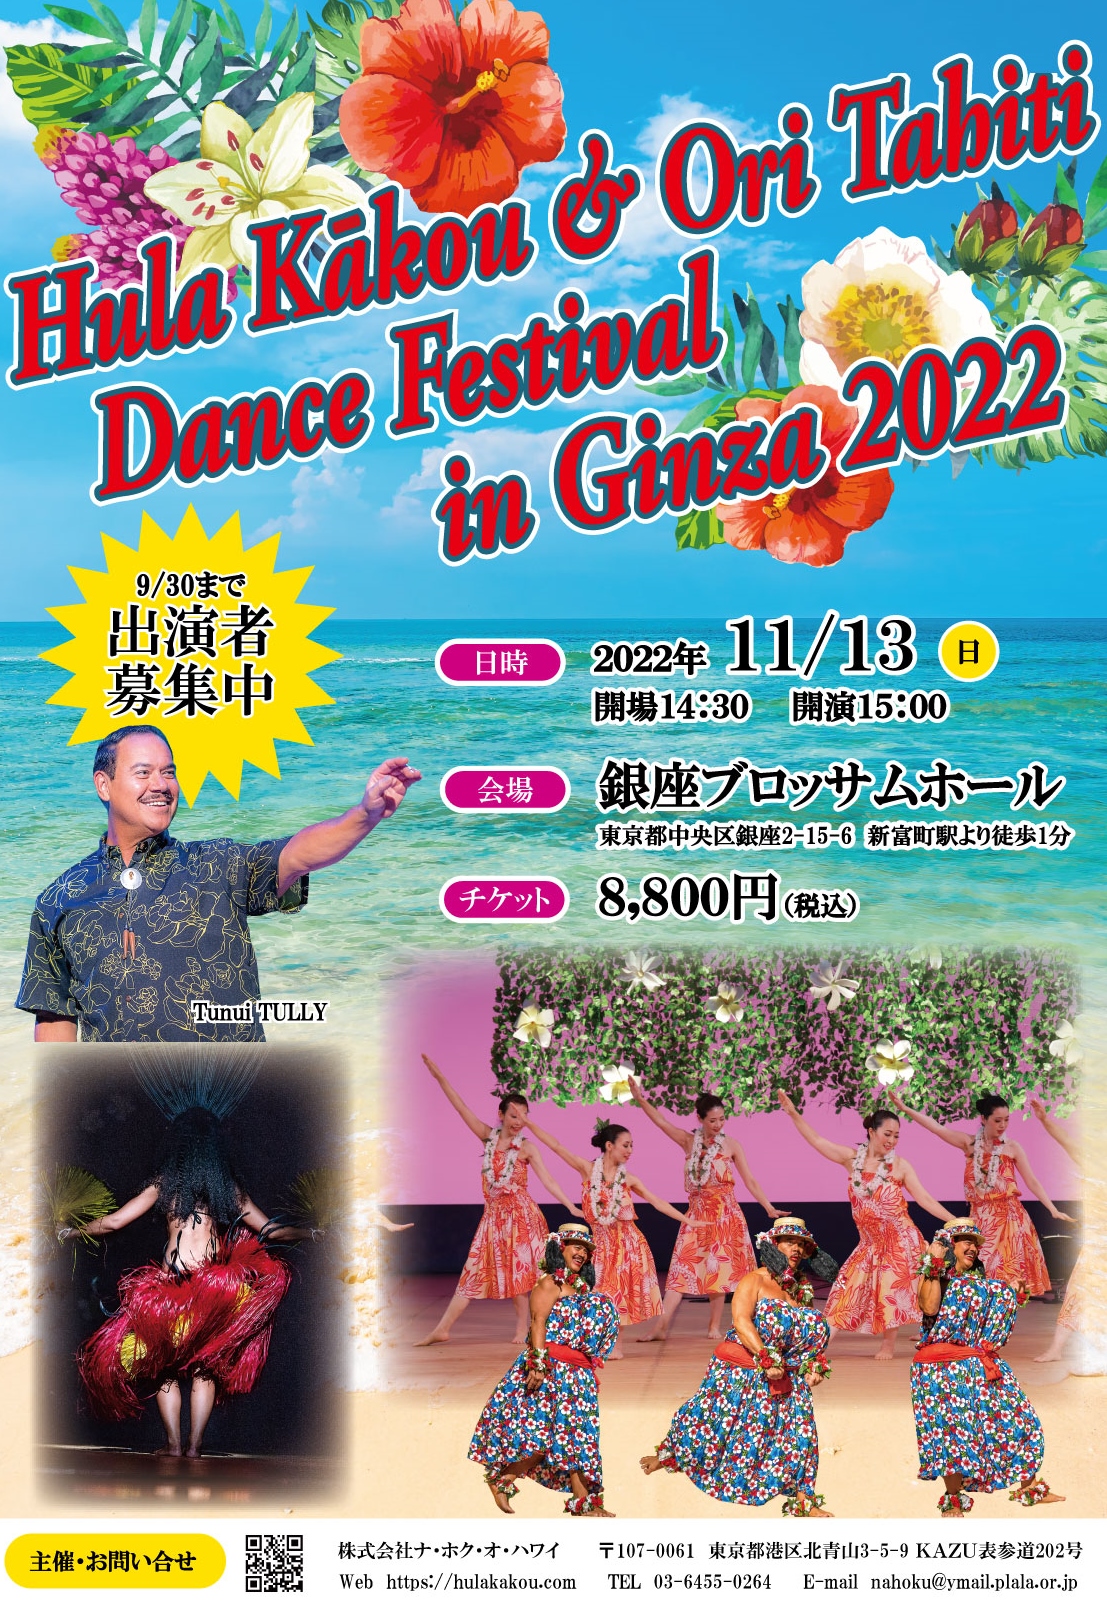 【開催のお知らせ】Hula Kākou & Ori Tahiti Dance Festival in Ginza 2022